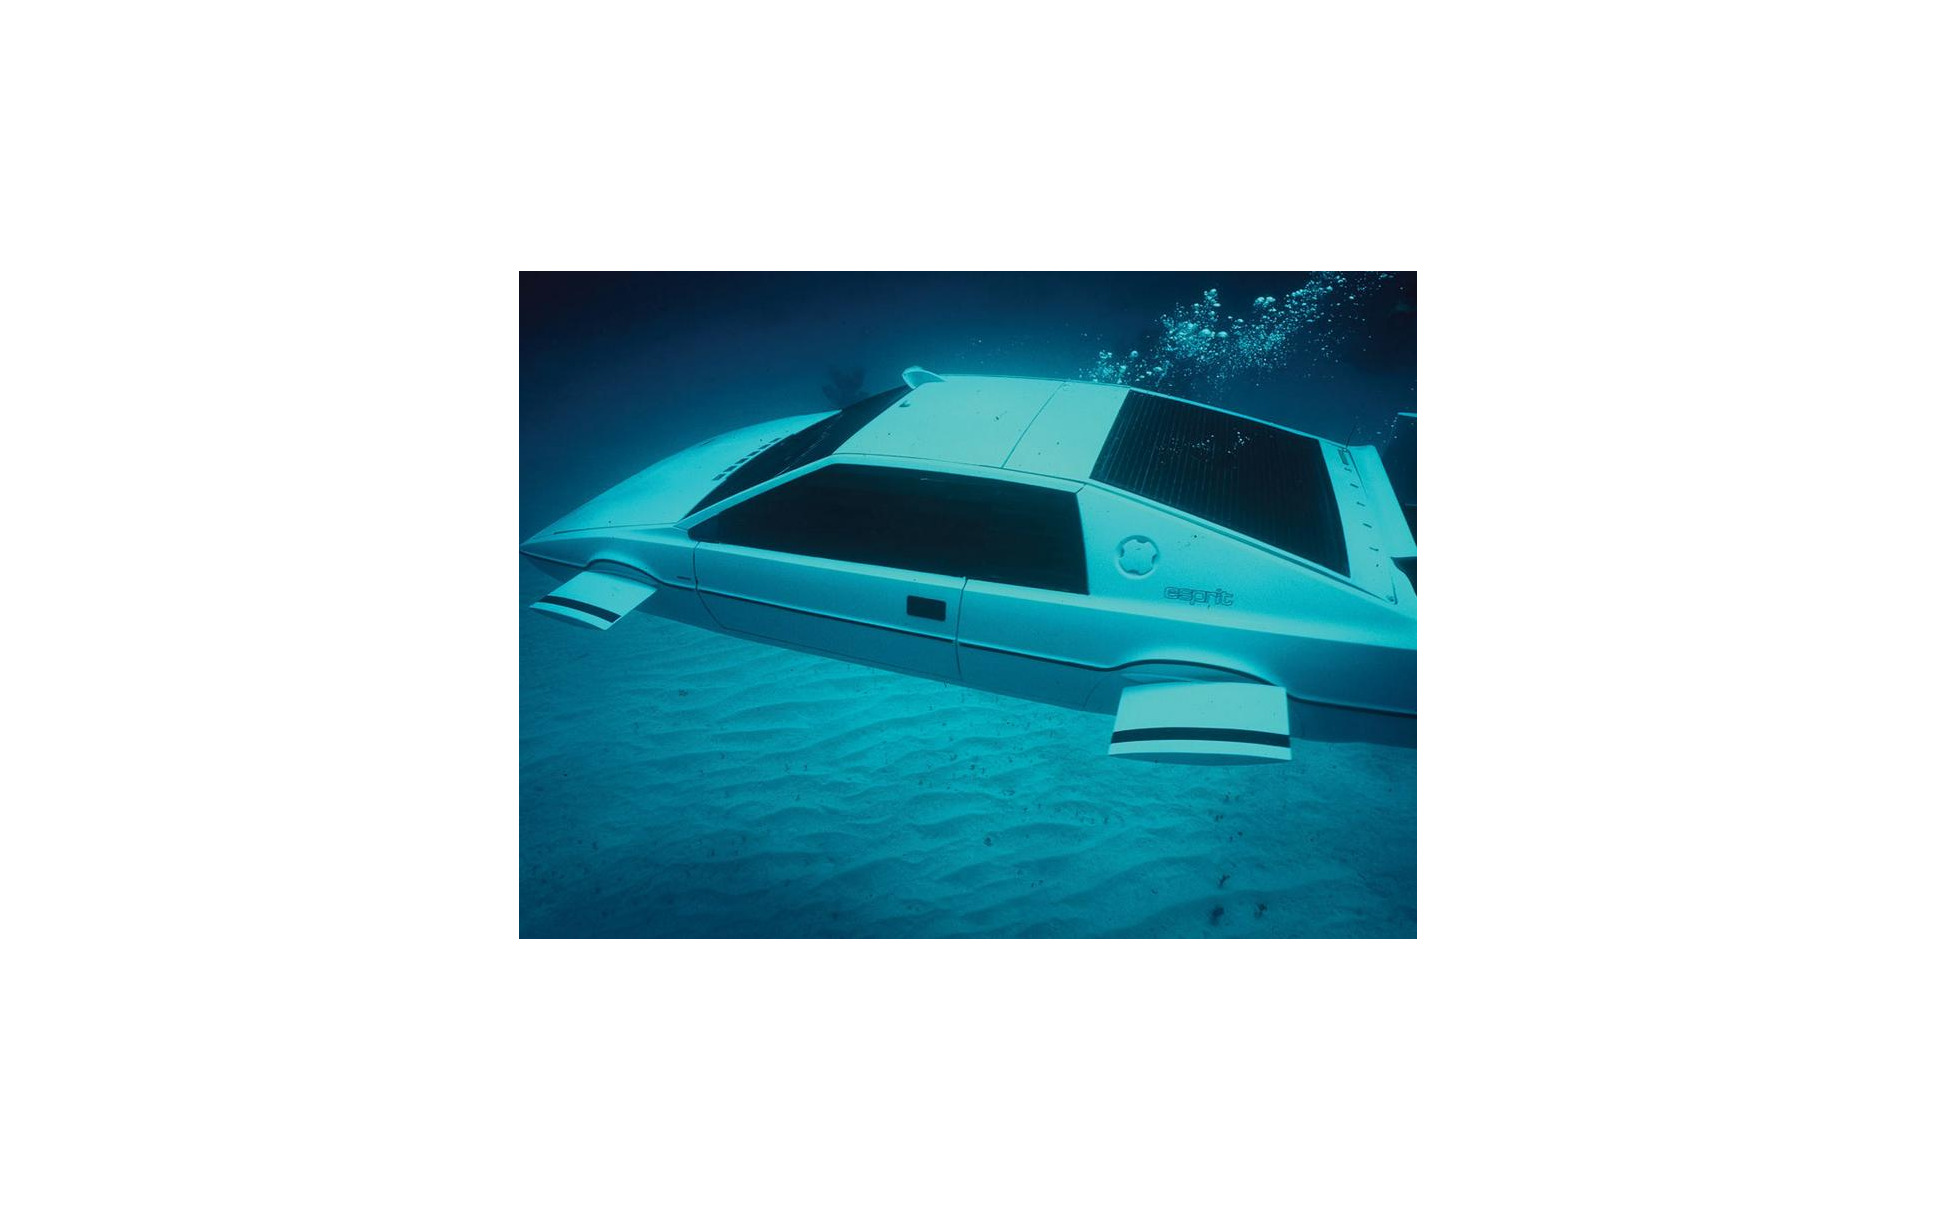 映画 007 のボンドカー ロータス エスプリ 潜水艇仕様がオークションに 2枚目の写真 画像 レスポンス Response Jp